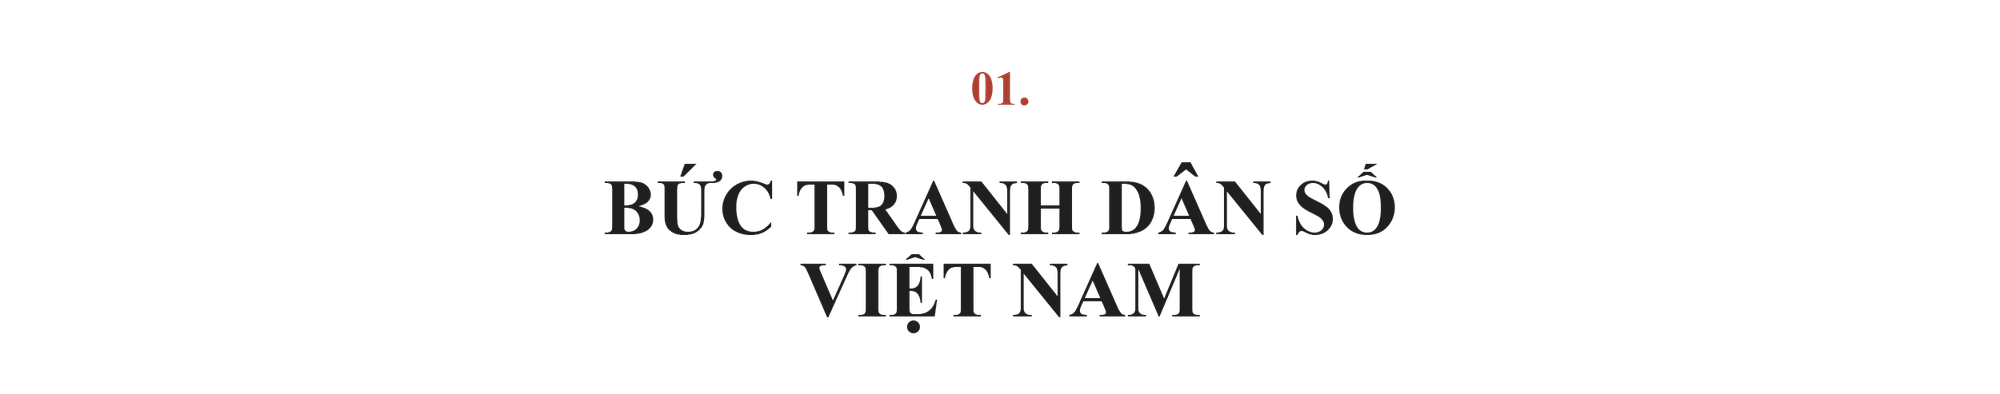 Bức tranh toàn cảnh dân số của Việt Nam nói lên điều gì? - Ảnh 2.